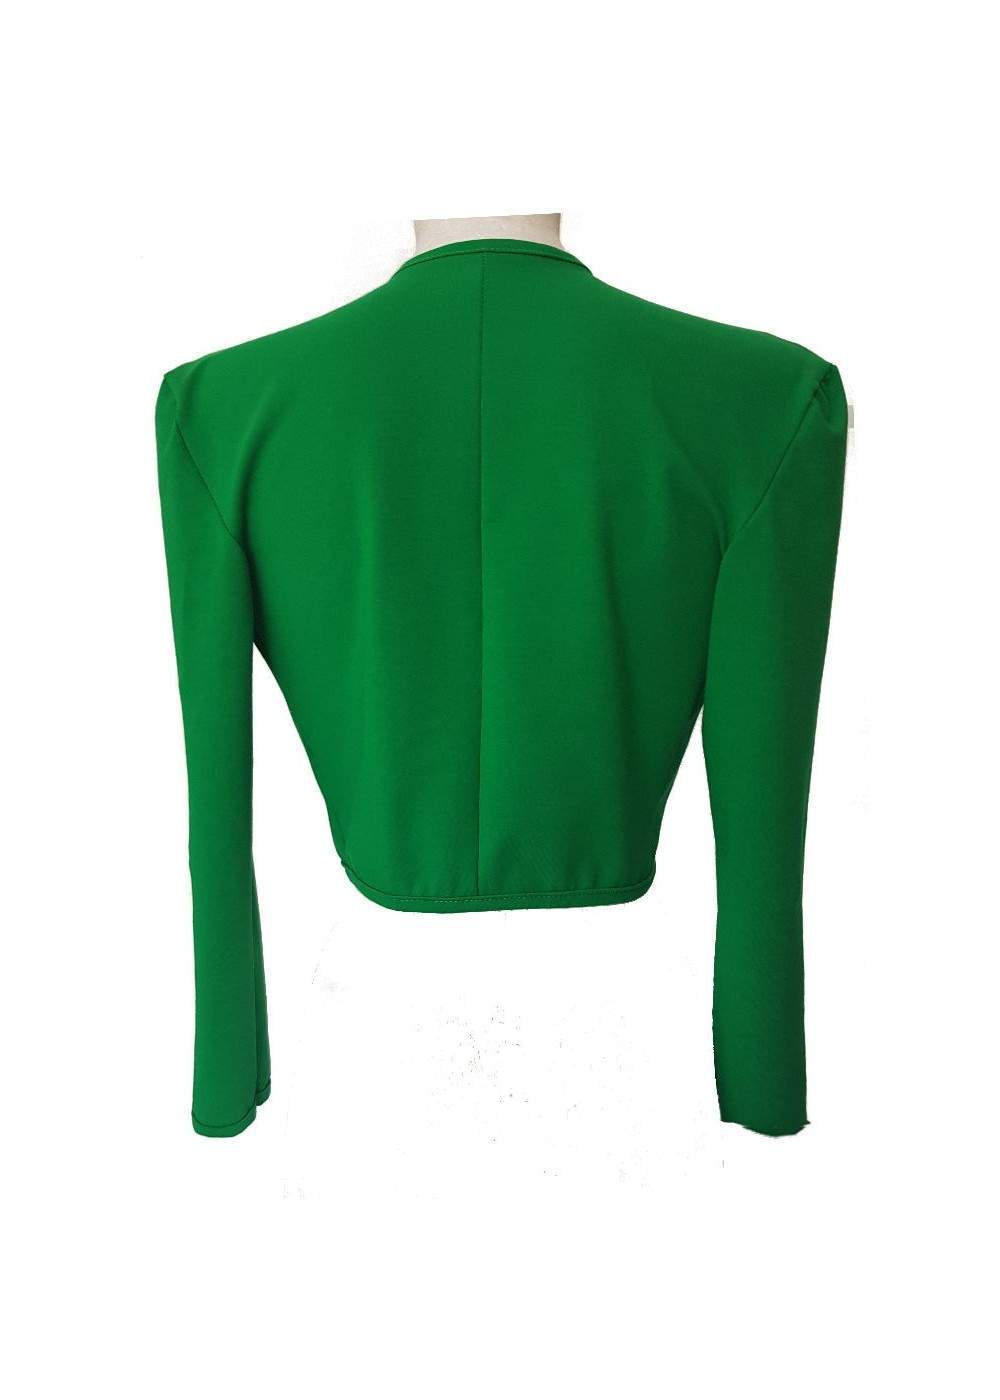 Sizes 34 - 52 Green Cotton Stretch Short Jacket from Magdeburg Prod... - Deutsche Produktion